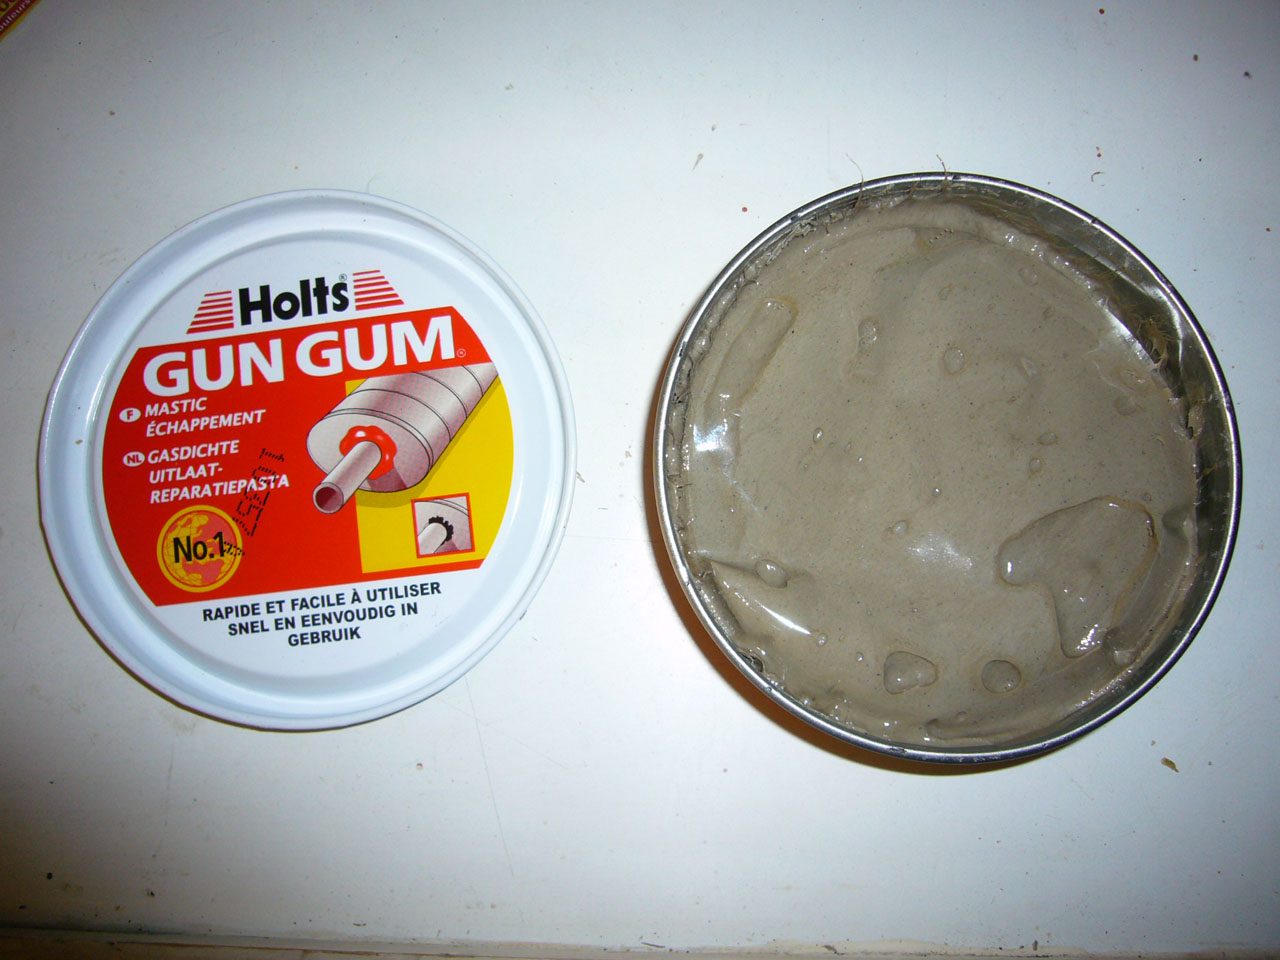 comment appliquer gun gum